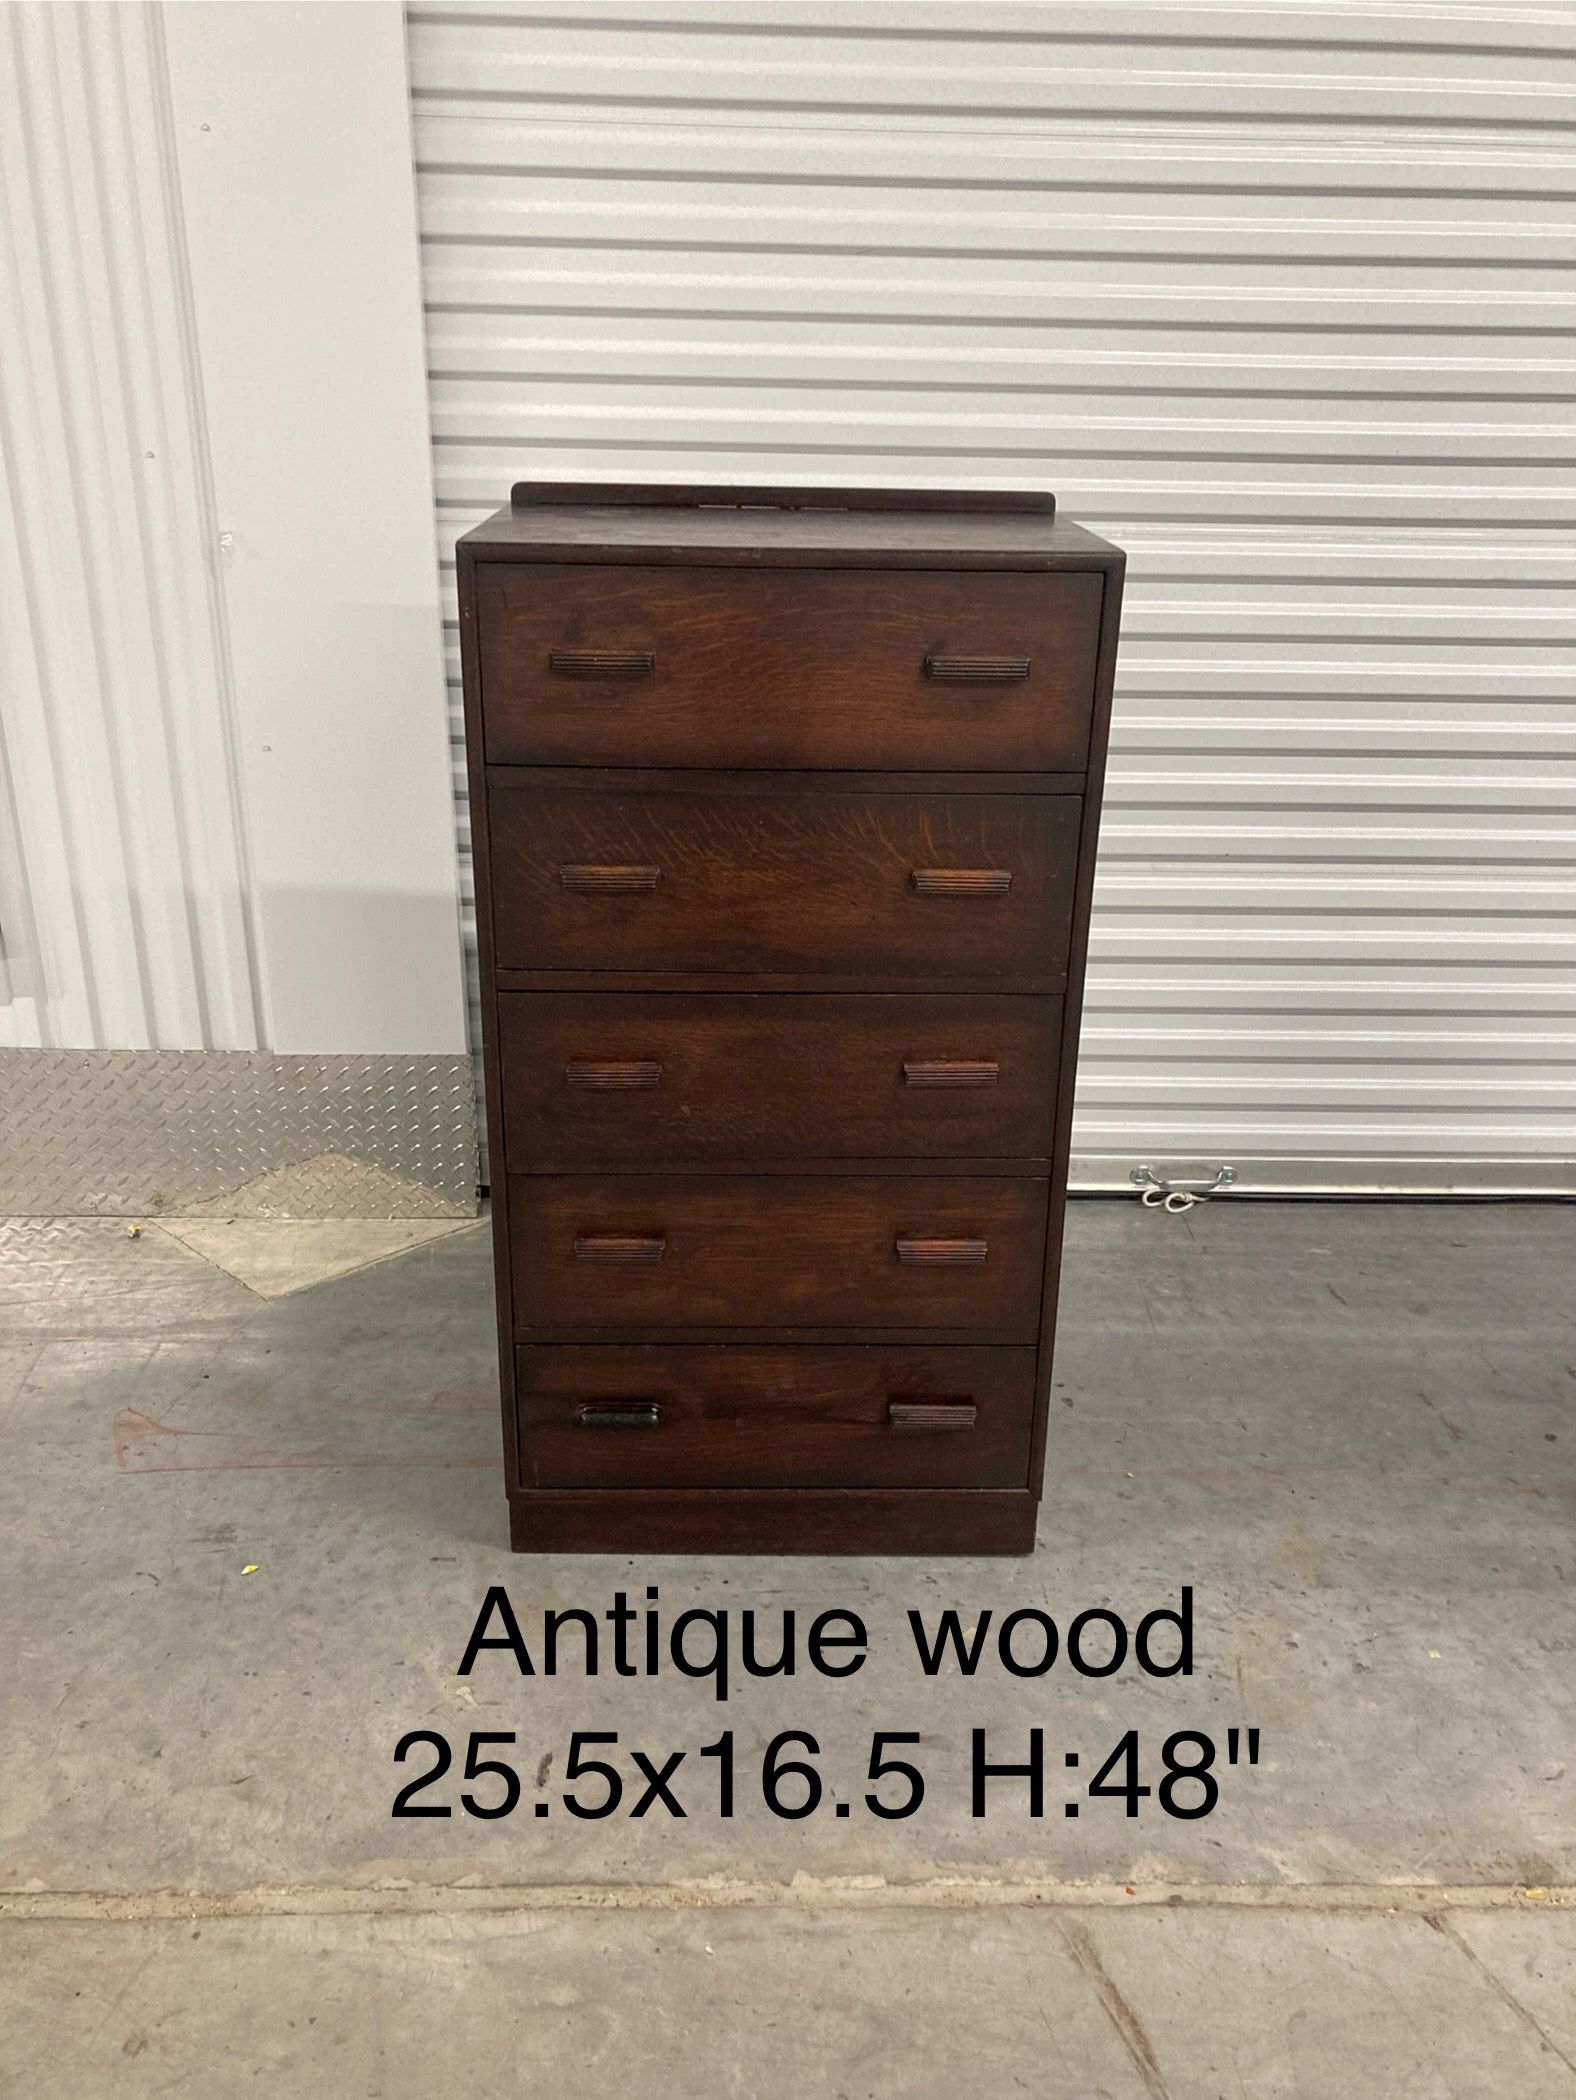 Antique Wooden Chest Dresser 